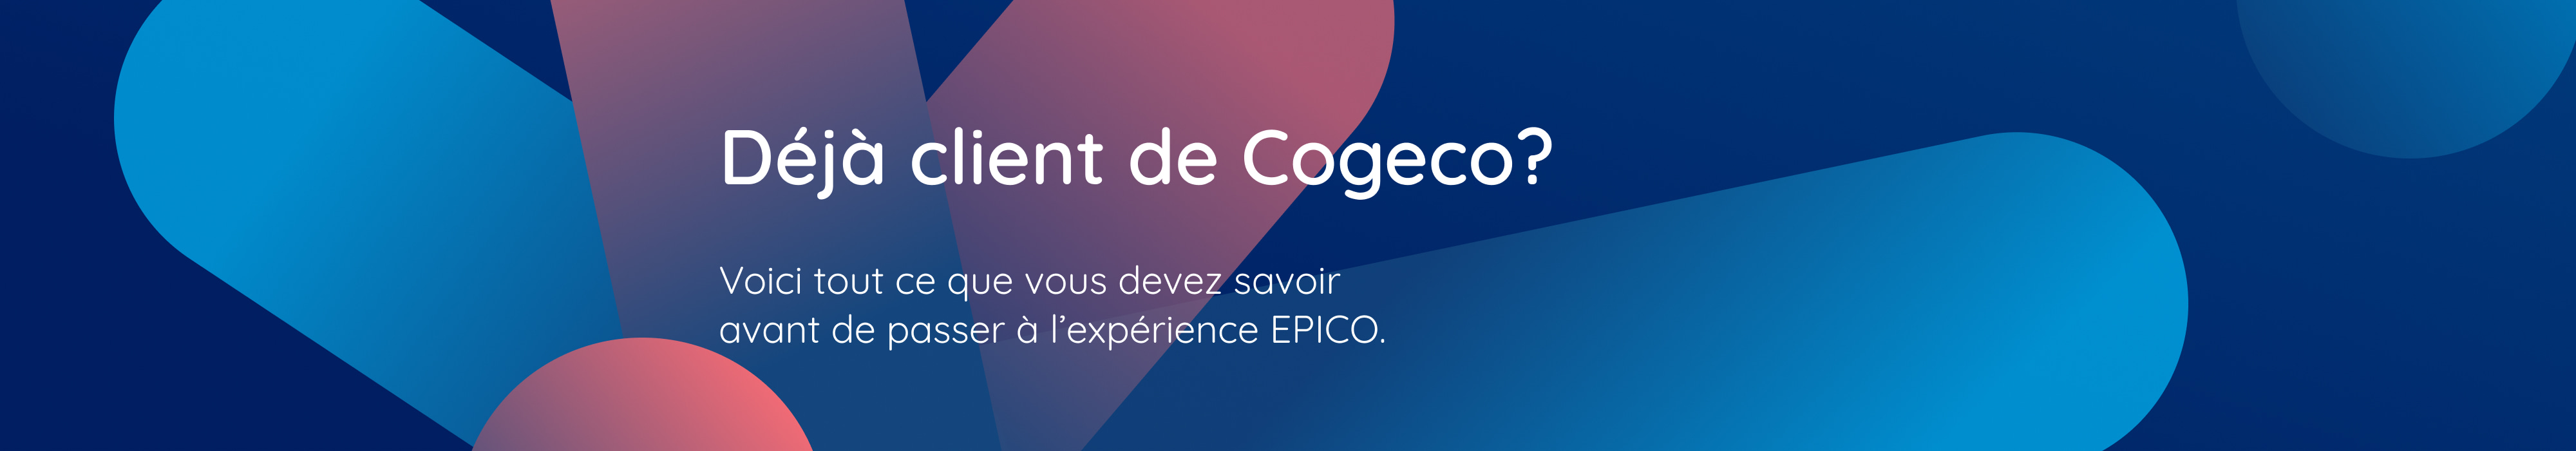 Déjà client de Cogeco? Voici tout ce que vous devez savoir avant de passer à l’expérience EPICO.